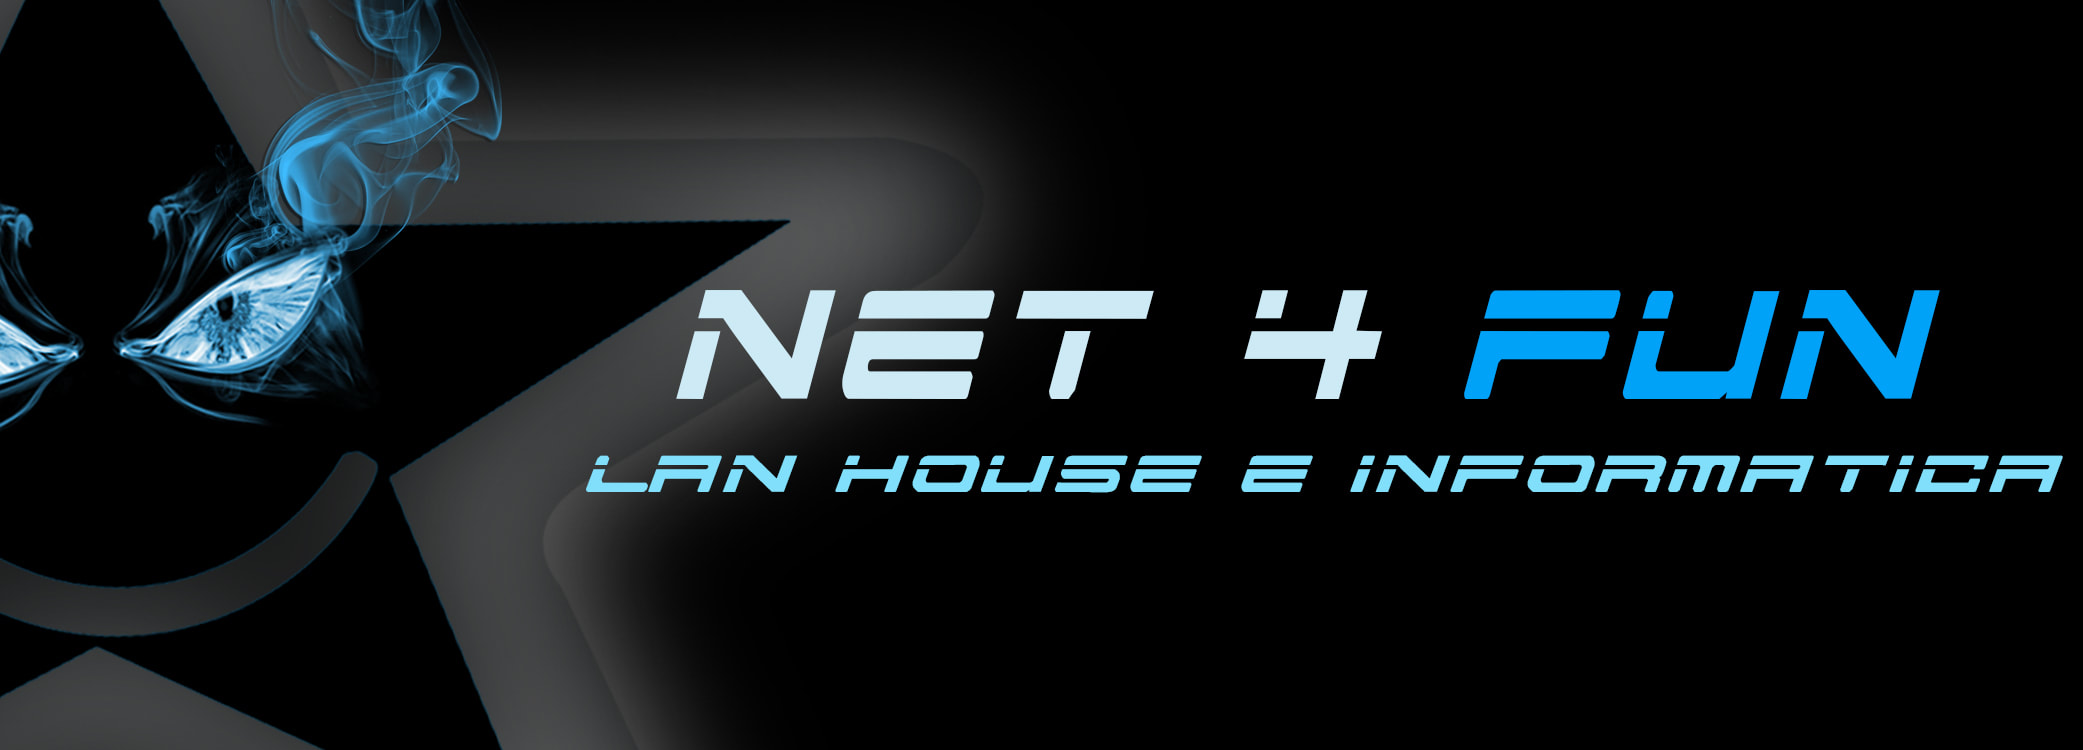 NET 4 FUN LAN HOUSE